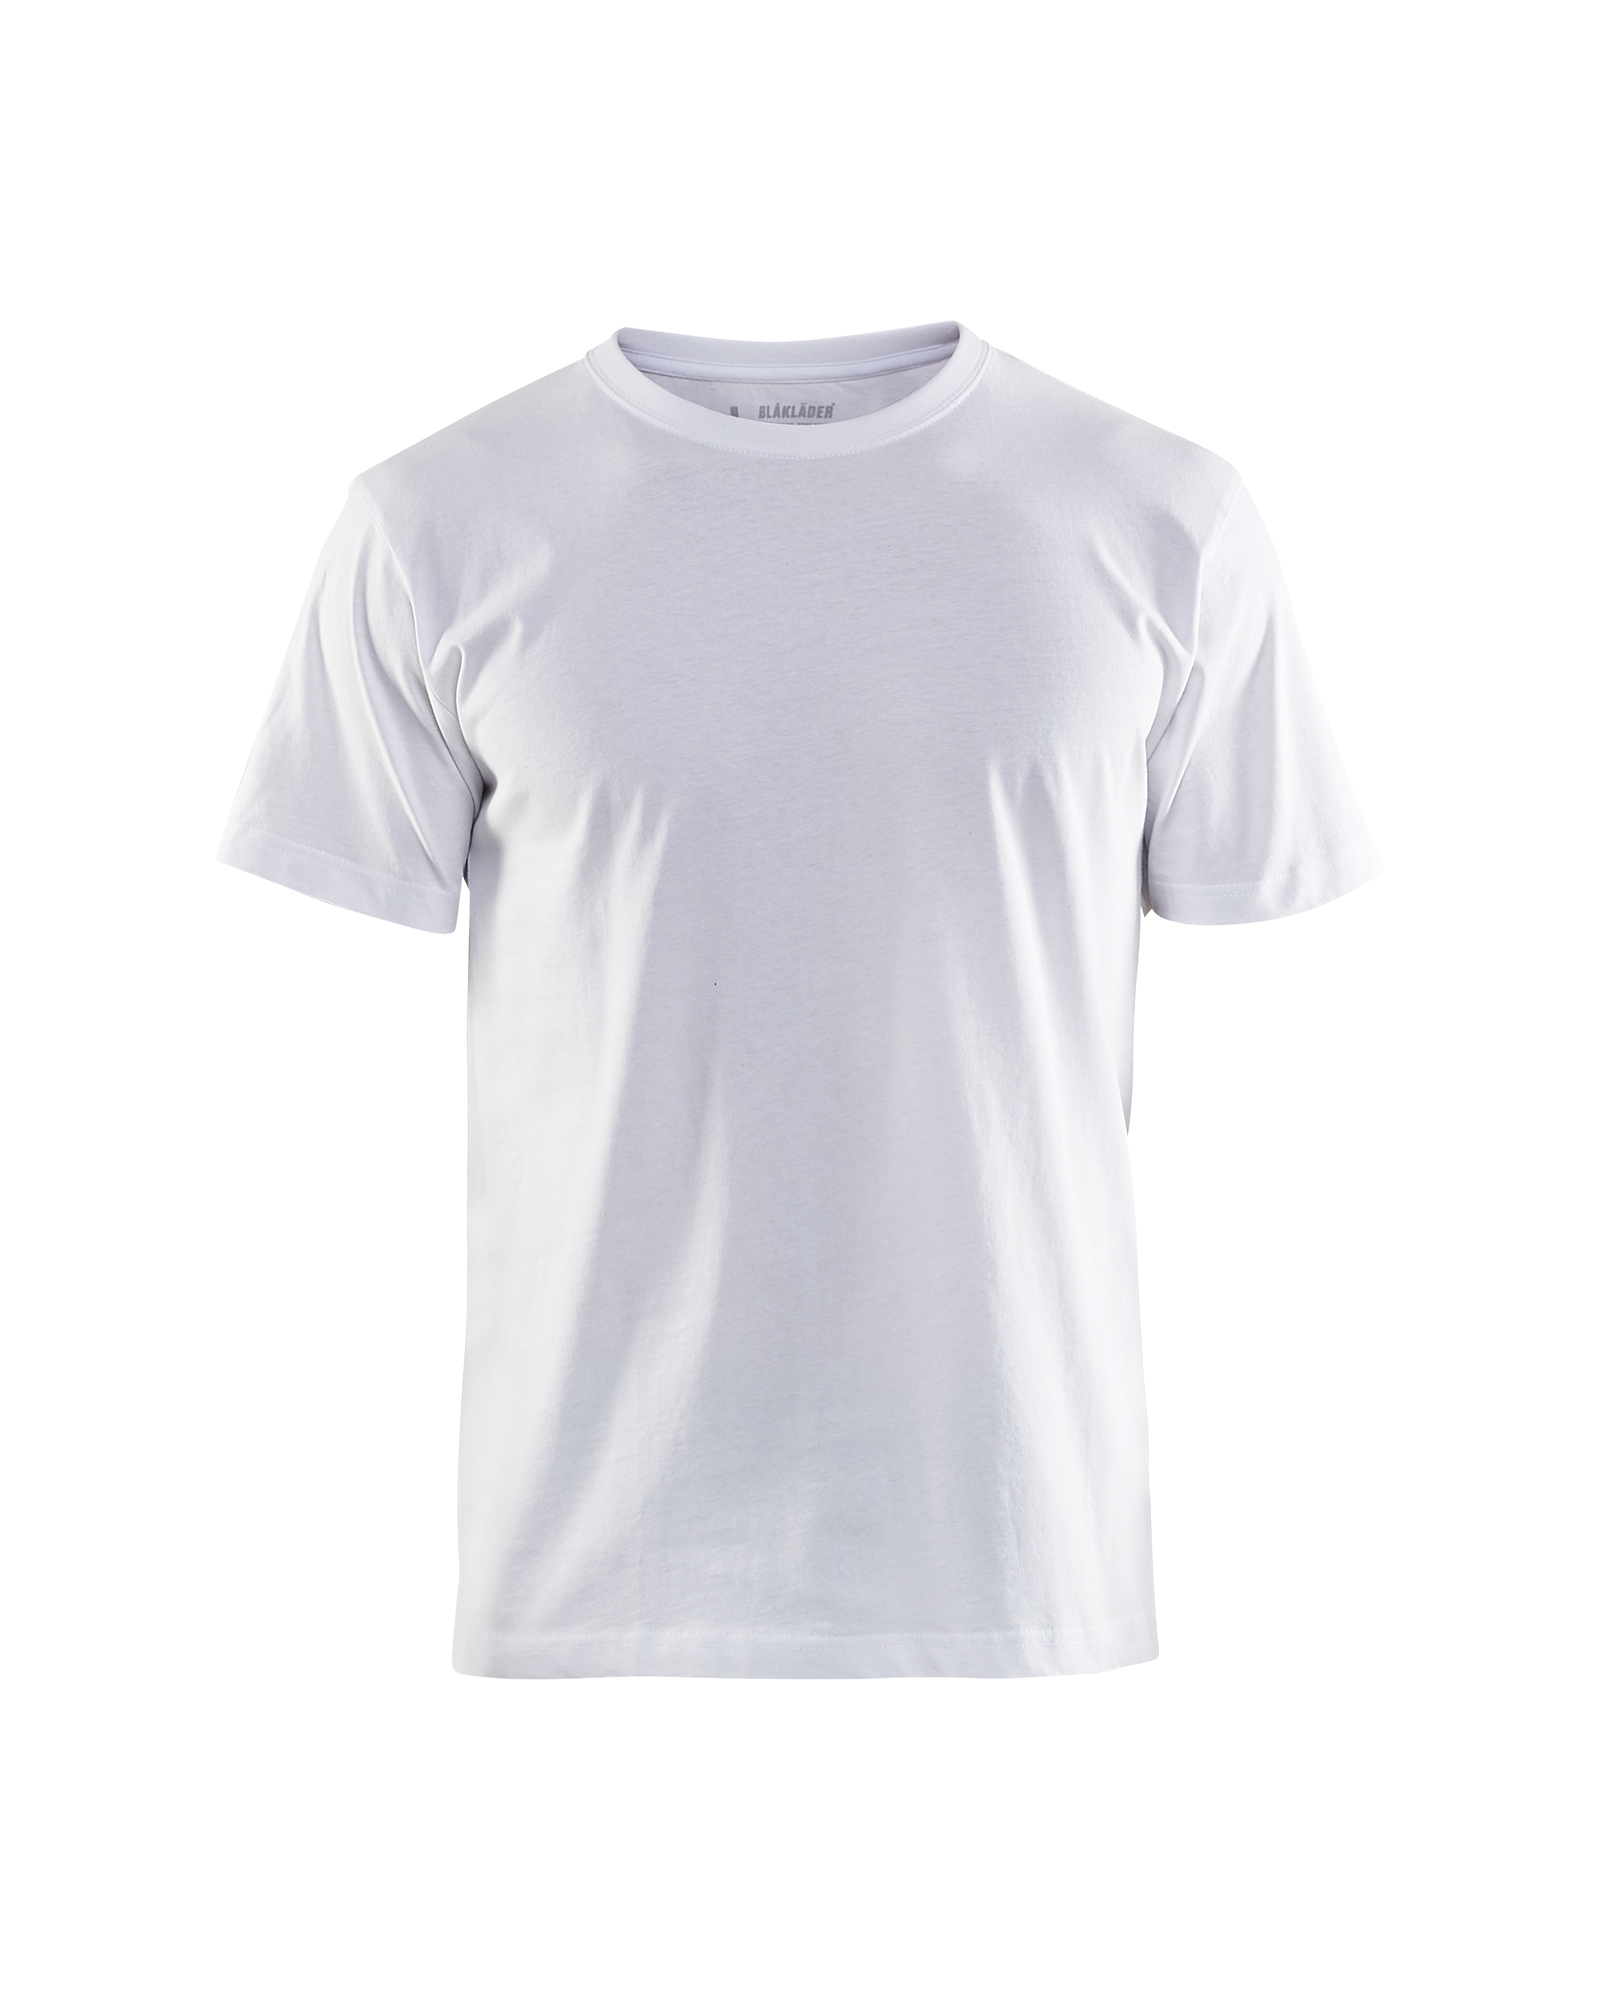 Blakläder T-Shirt 3300 1030 in 7 Farben 